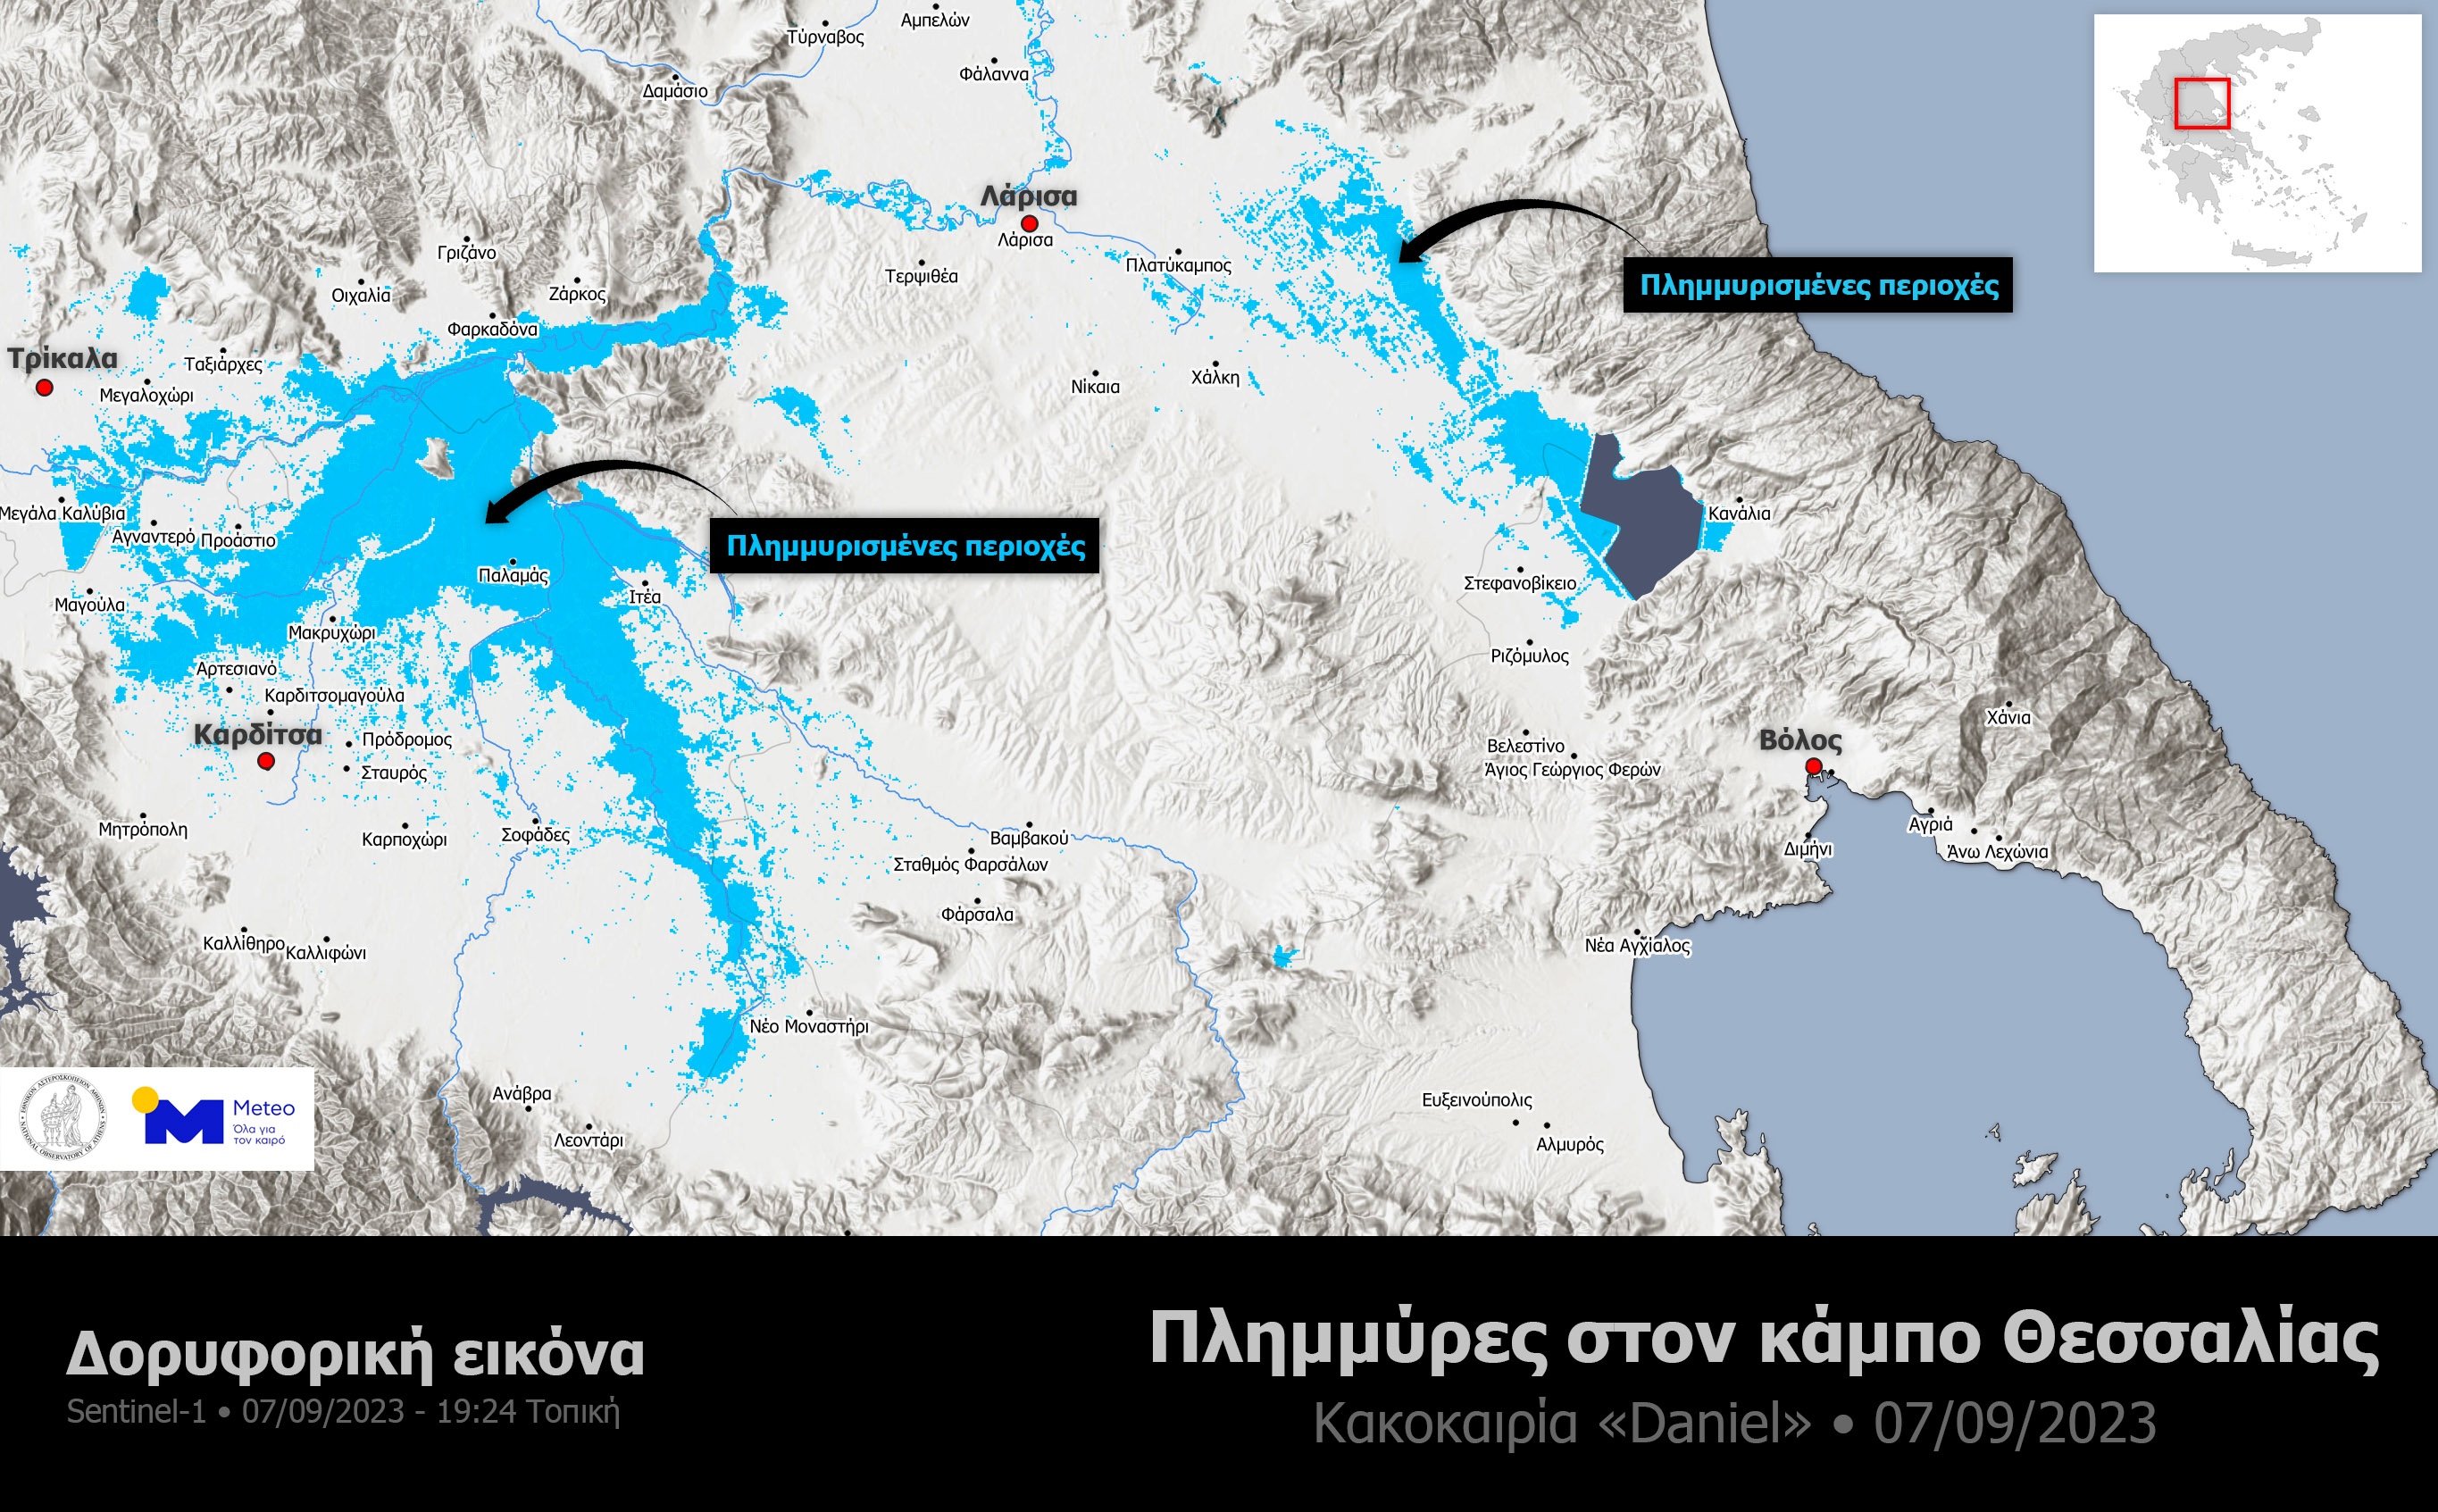 <p>Le soleil est revenu sur le centre de la Grèce mais l'eau a du mal à s'évacuer dans la plaine de Thessalie et des digues ont rompu. L'armée procède à des évacuations à Karditsa. Les zones inondées sont vastes dans la plaine.</p>